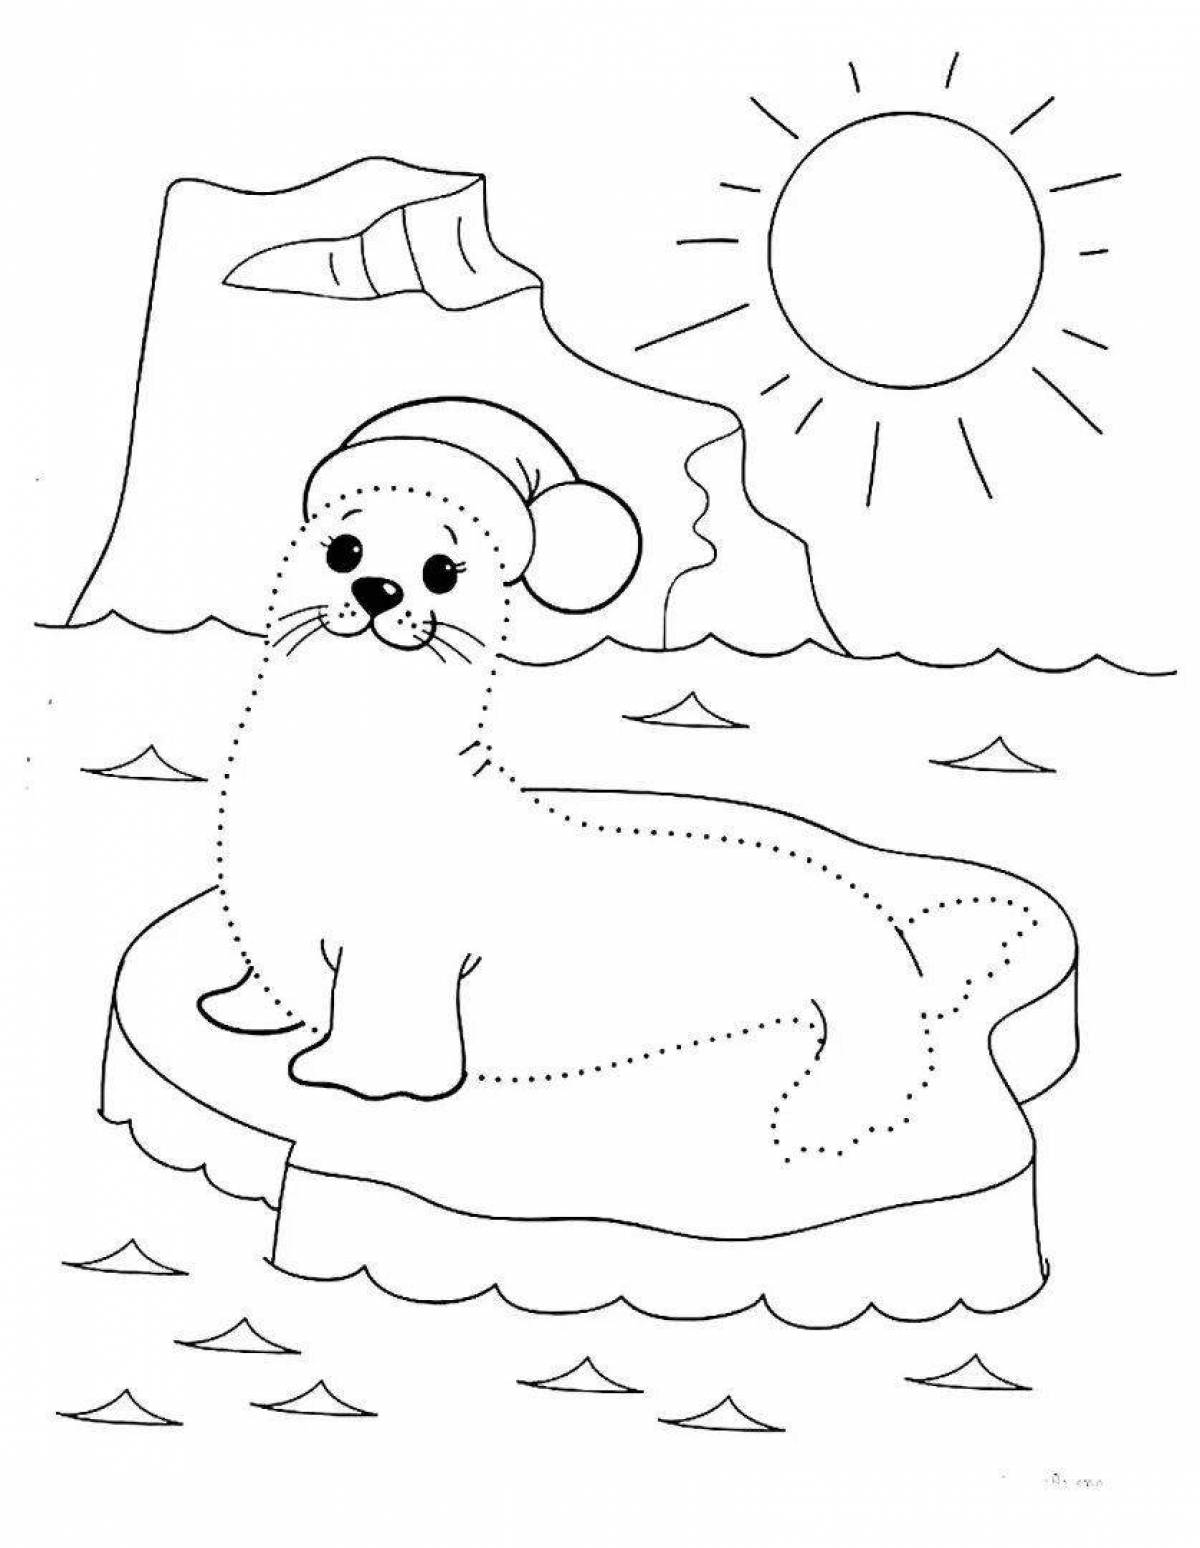 Веселая раскраска байкальского тюленя для детей